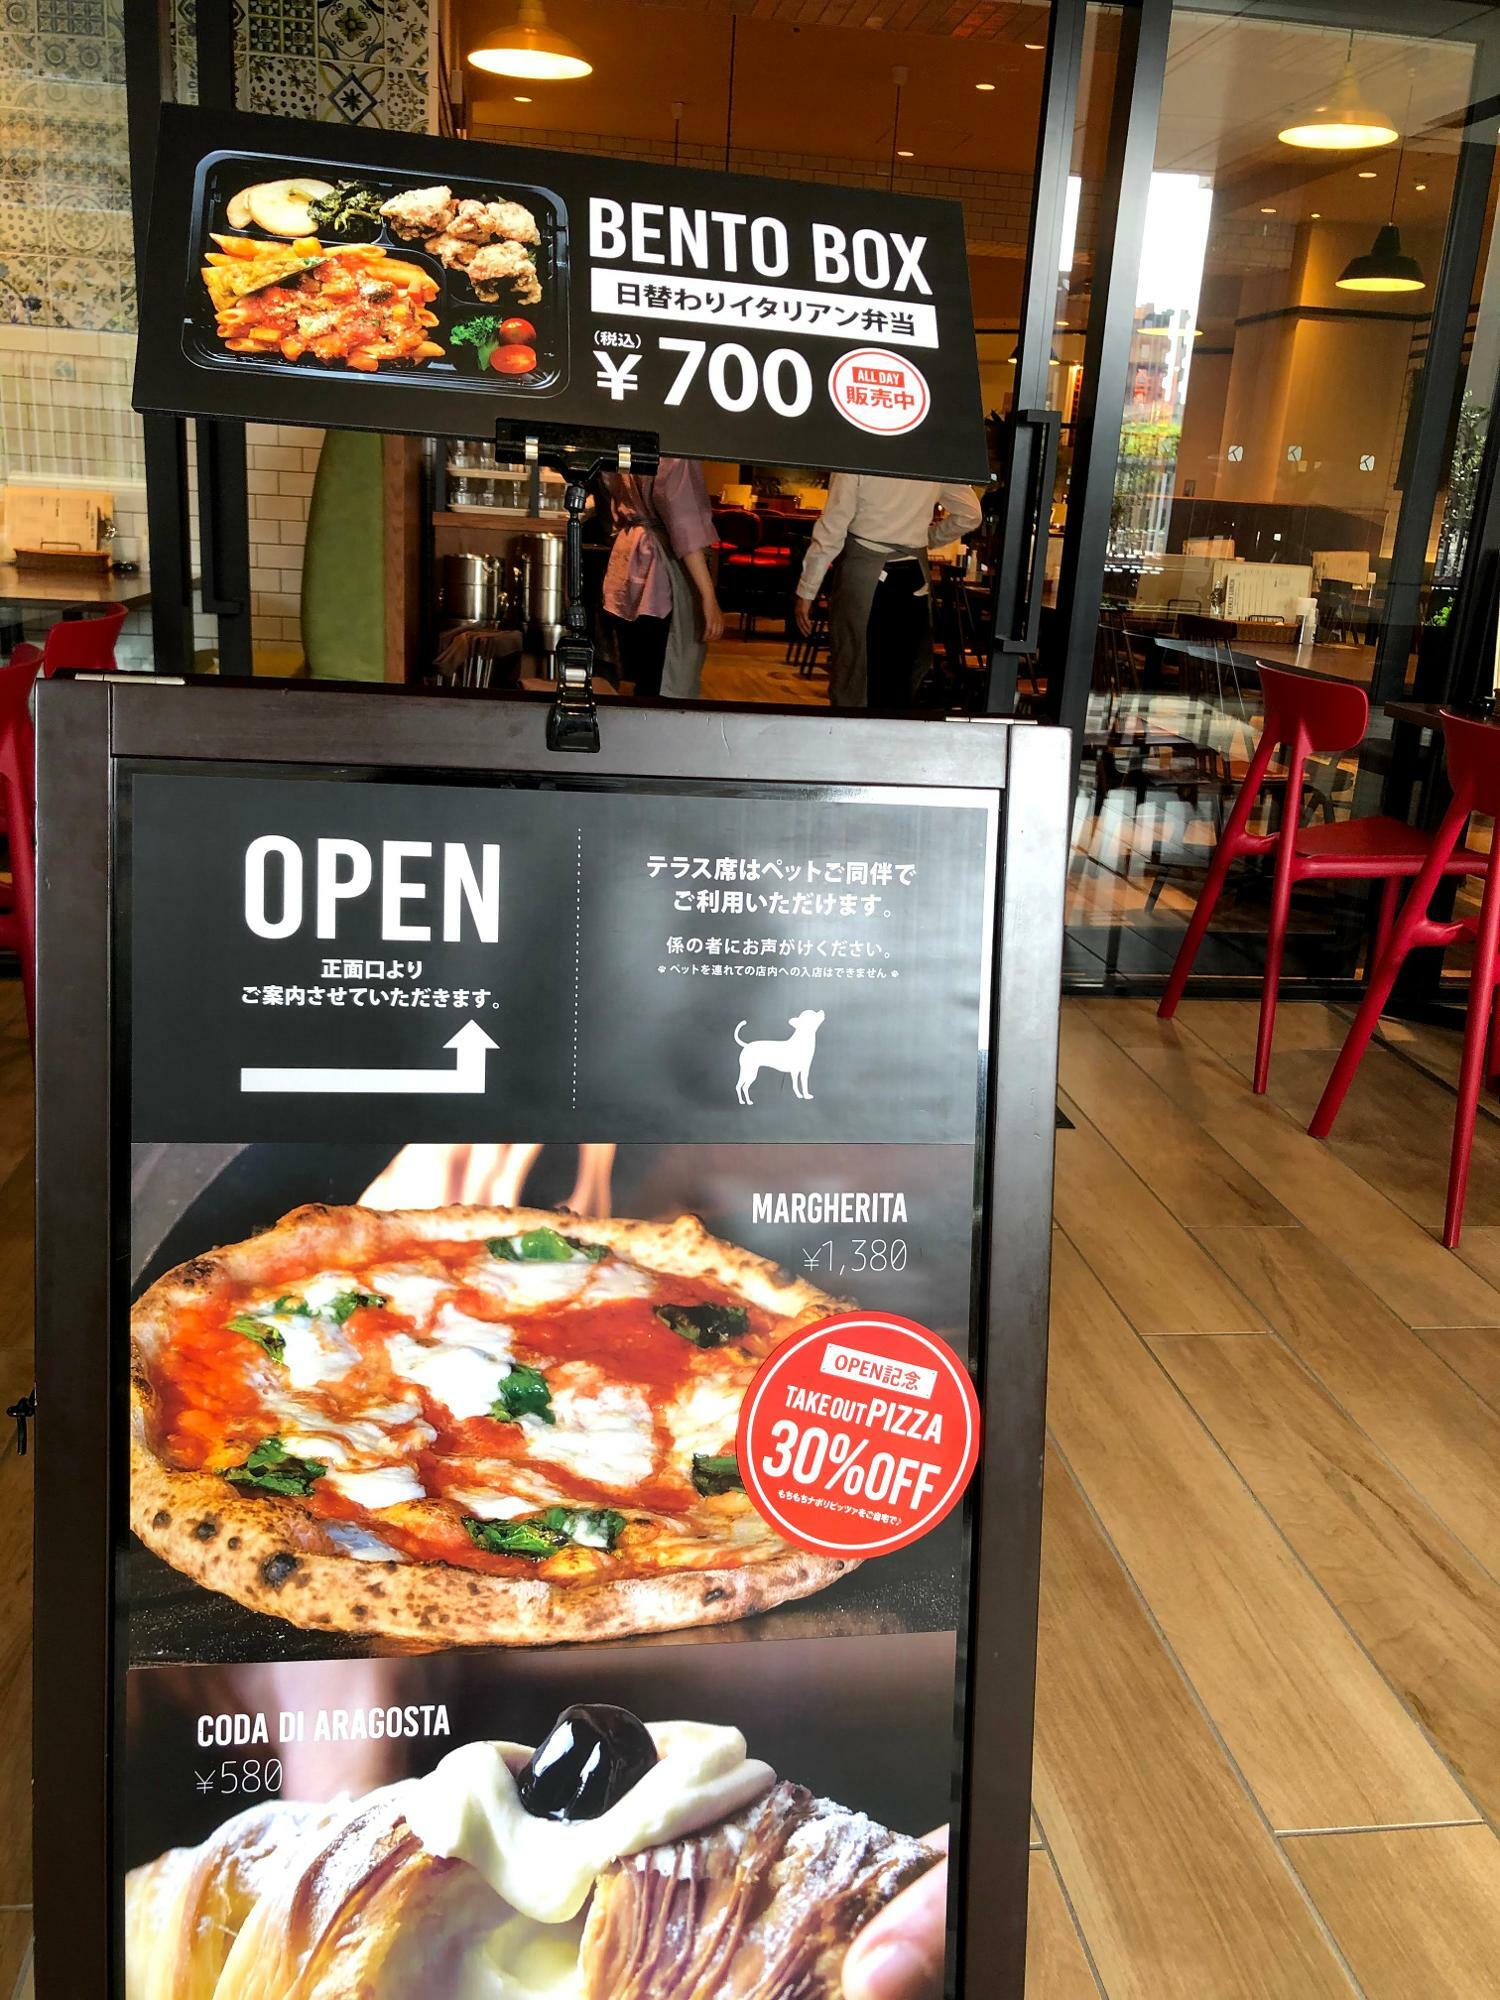 ナポリの下町食堂さんでも、テイクアウトのピザが30%オフとお得だった